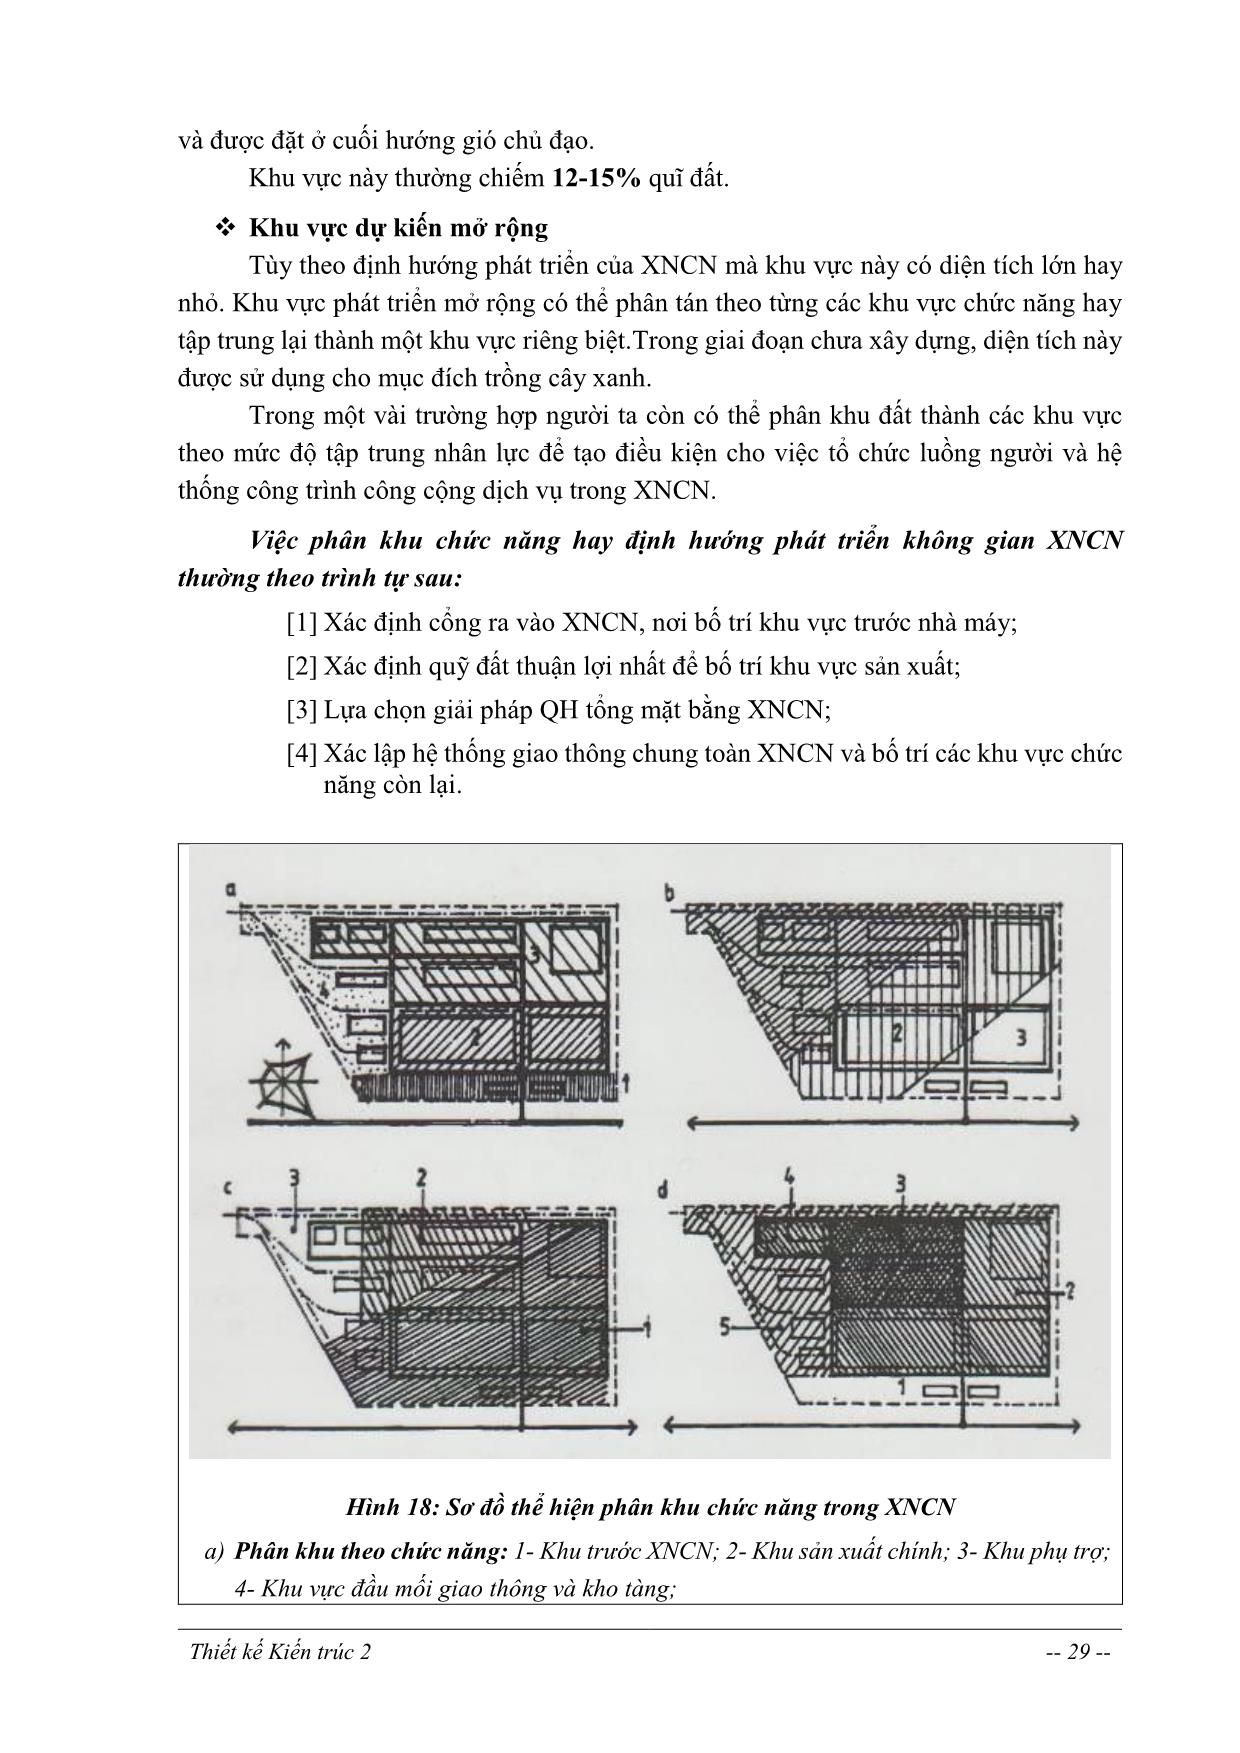 Giáo trình Thiết kế kiến trúc 2 - Chương 2: Mặt bằng tổng thể và tổ chức không gian xí nghiệp công nghiệp trang 4